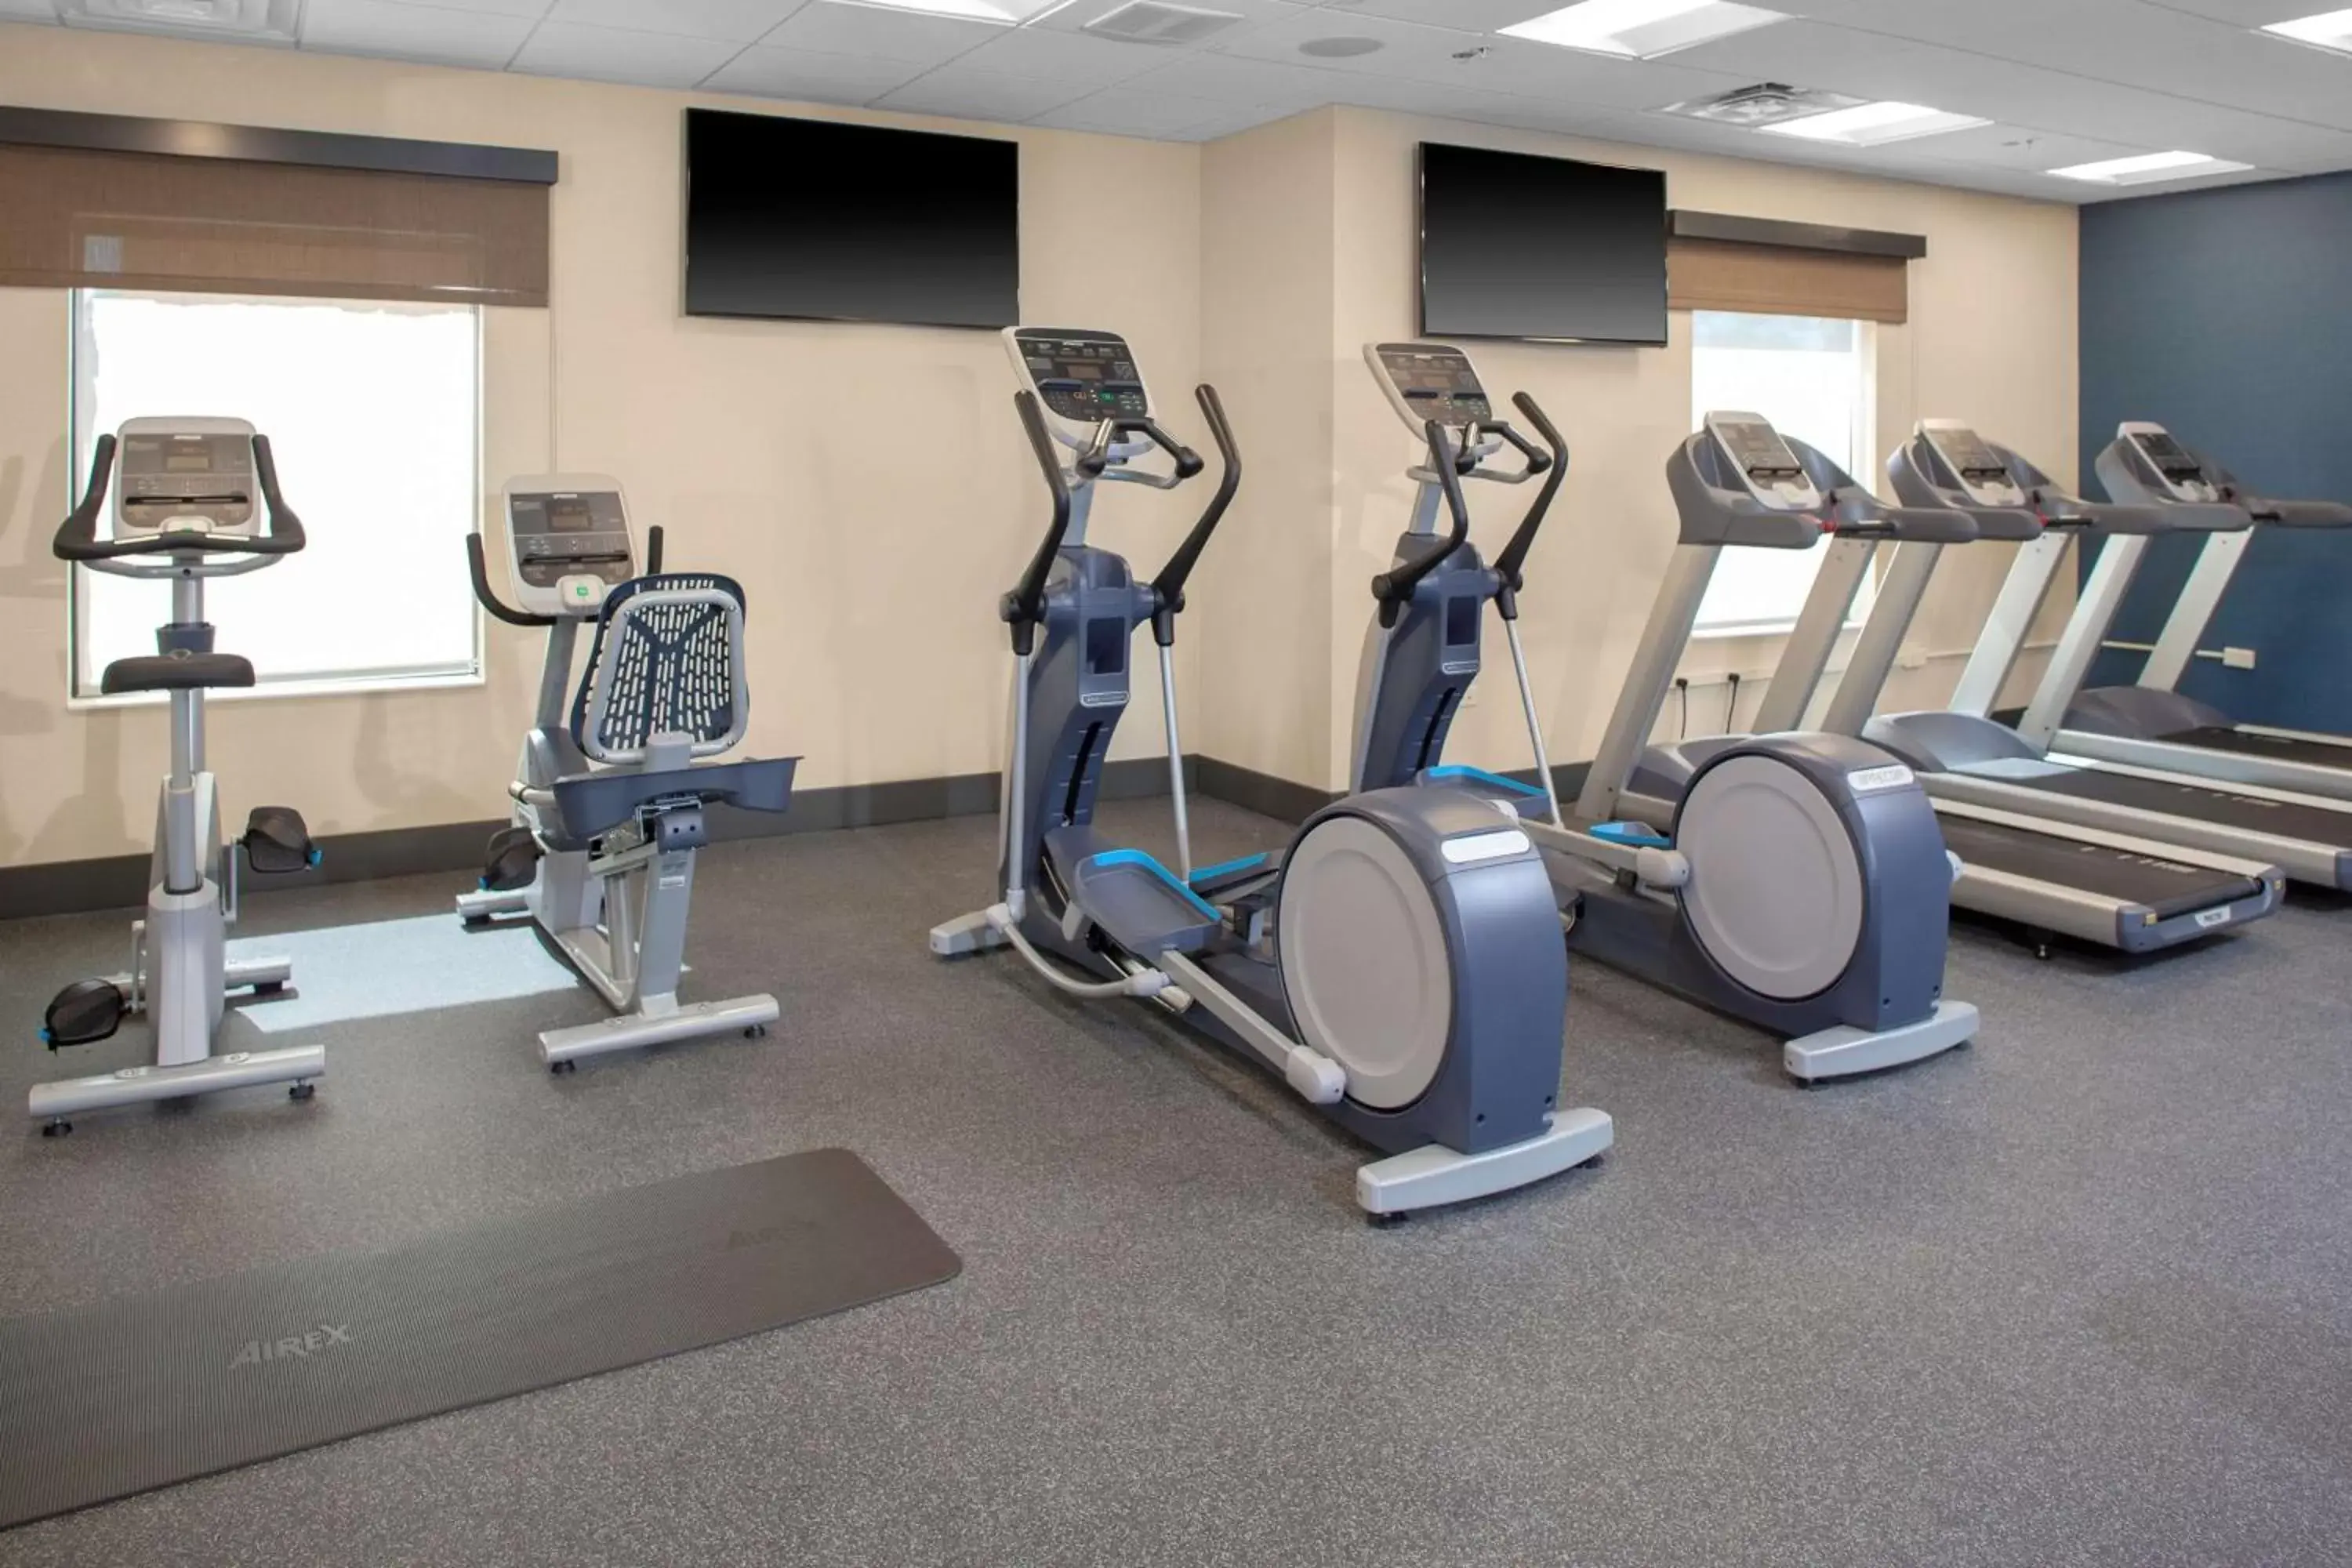 Fitness centre/facilities, Fitness Center/Facilities in Hampton Inn & Suites Chicago-Burr Ridge